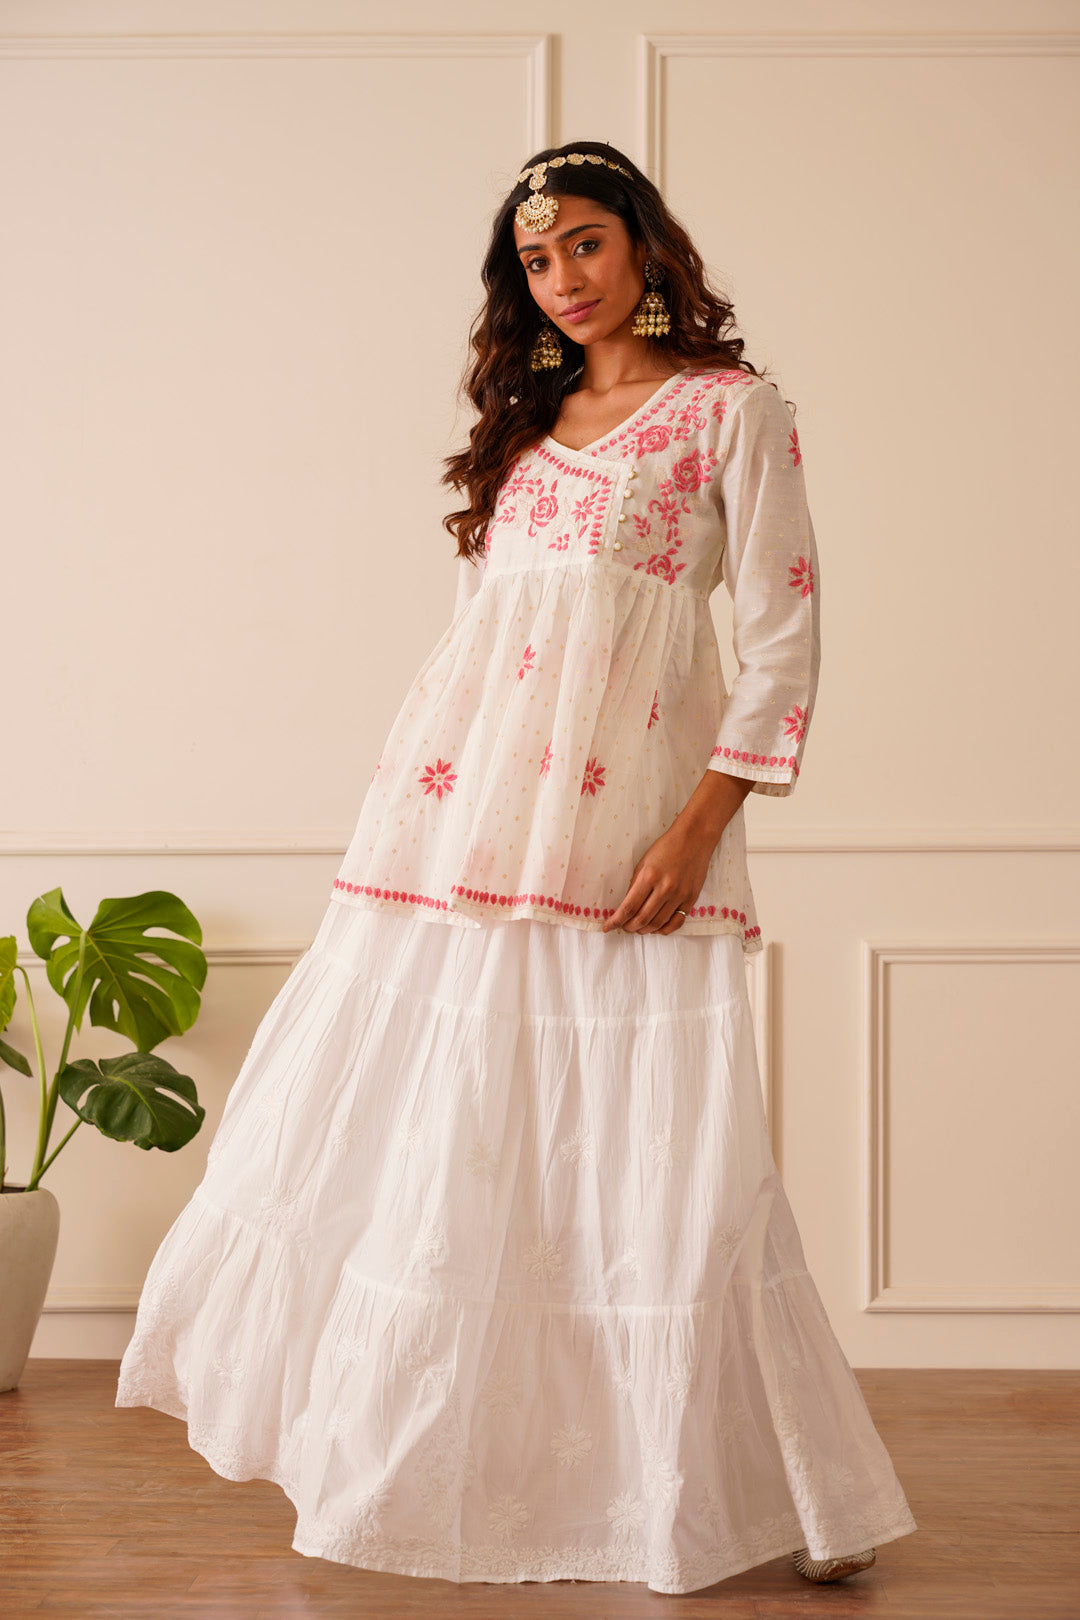 Medium White Printed Cotton Short Kurti at Rs 595/piece in Jaipur | ID:  2851654118733